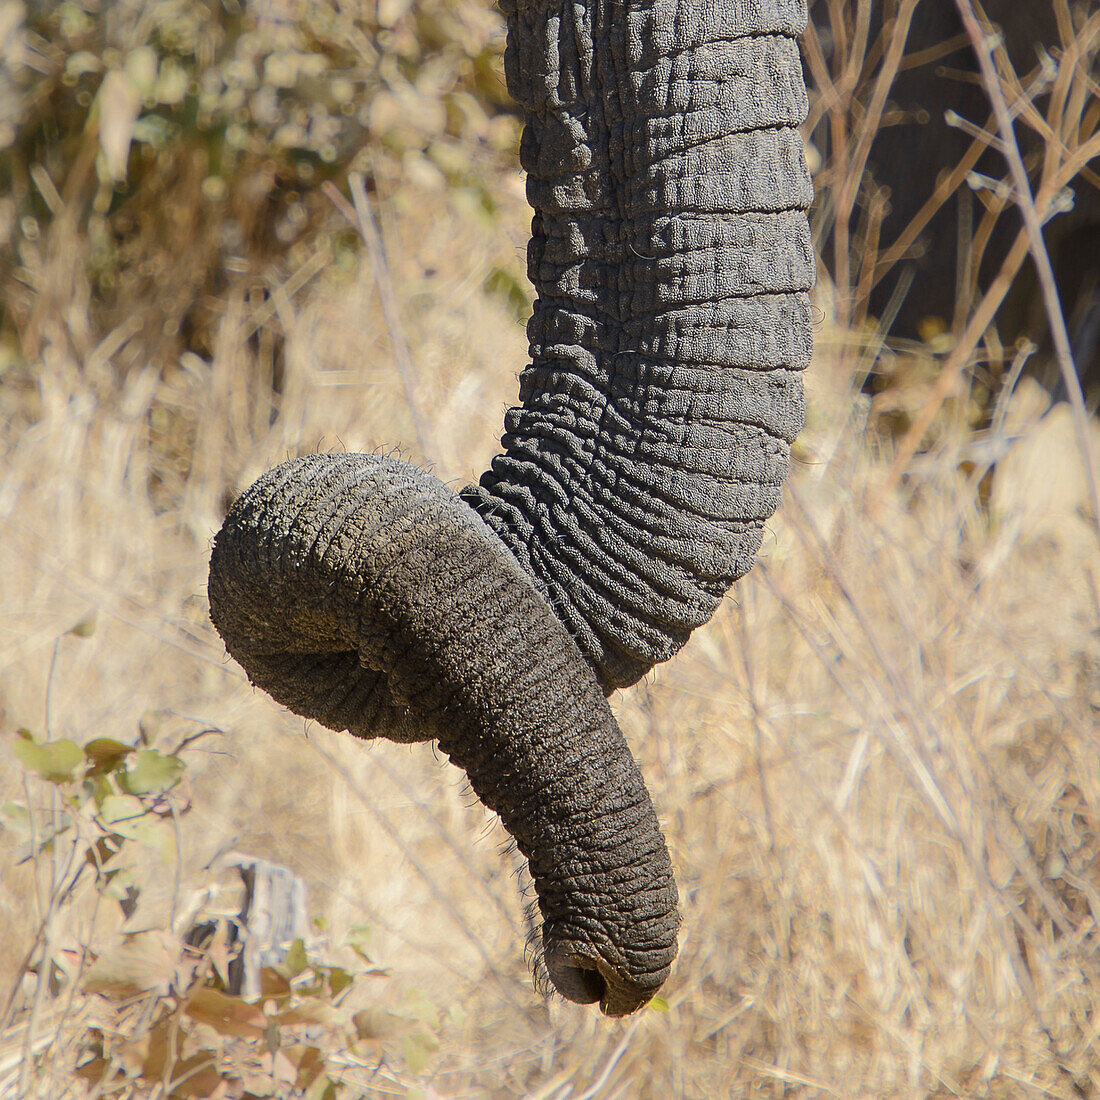 elephant trunk, Etosha National Park, Namibia, Africa